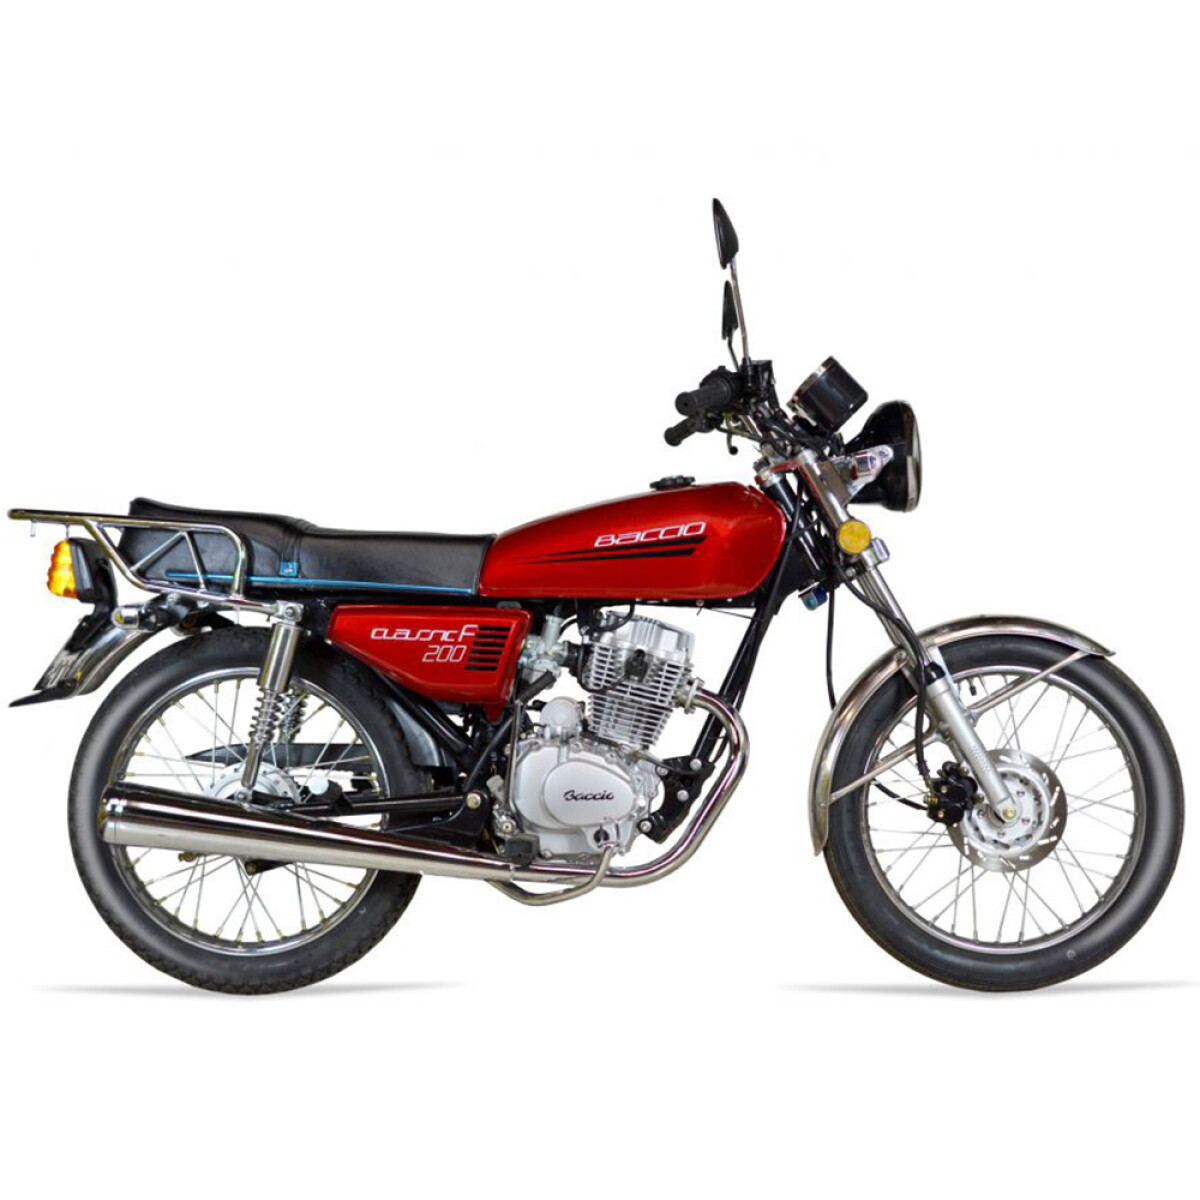 Moto Baccio Classic 200 - Rojo 